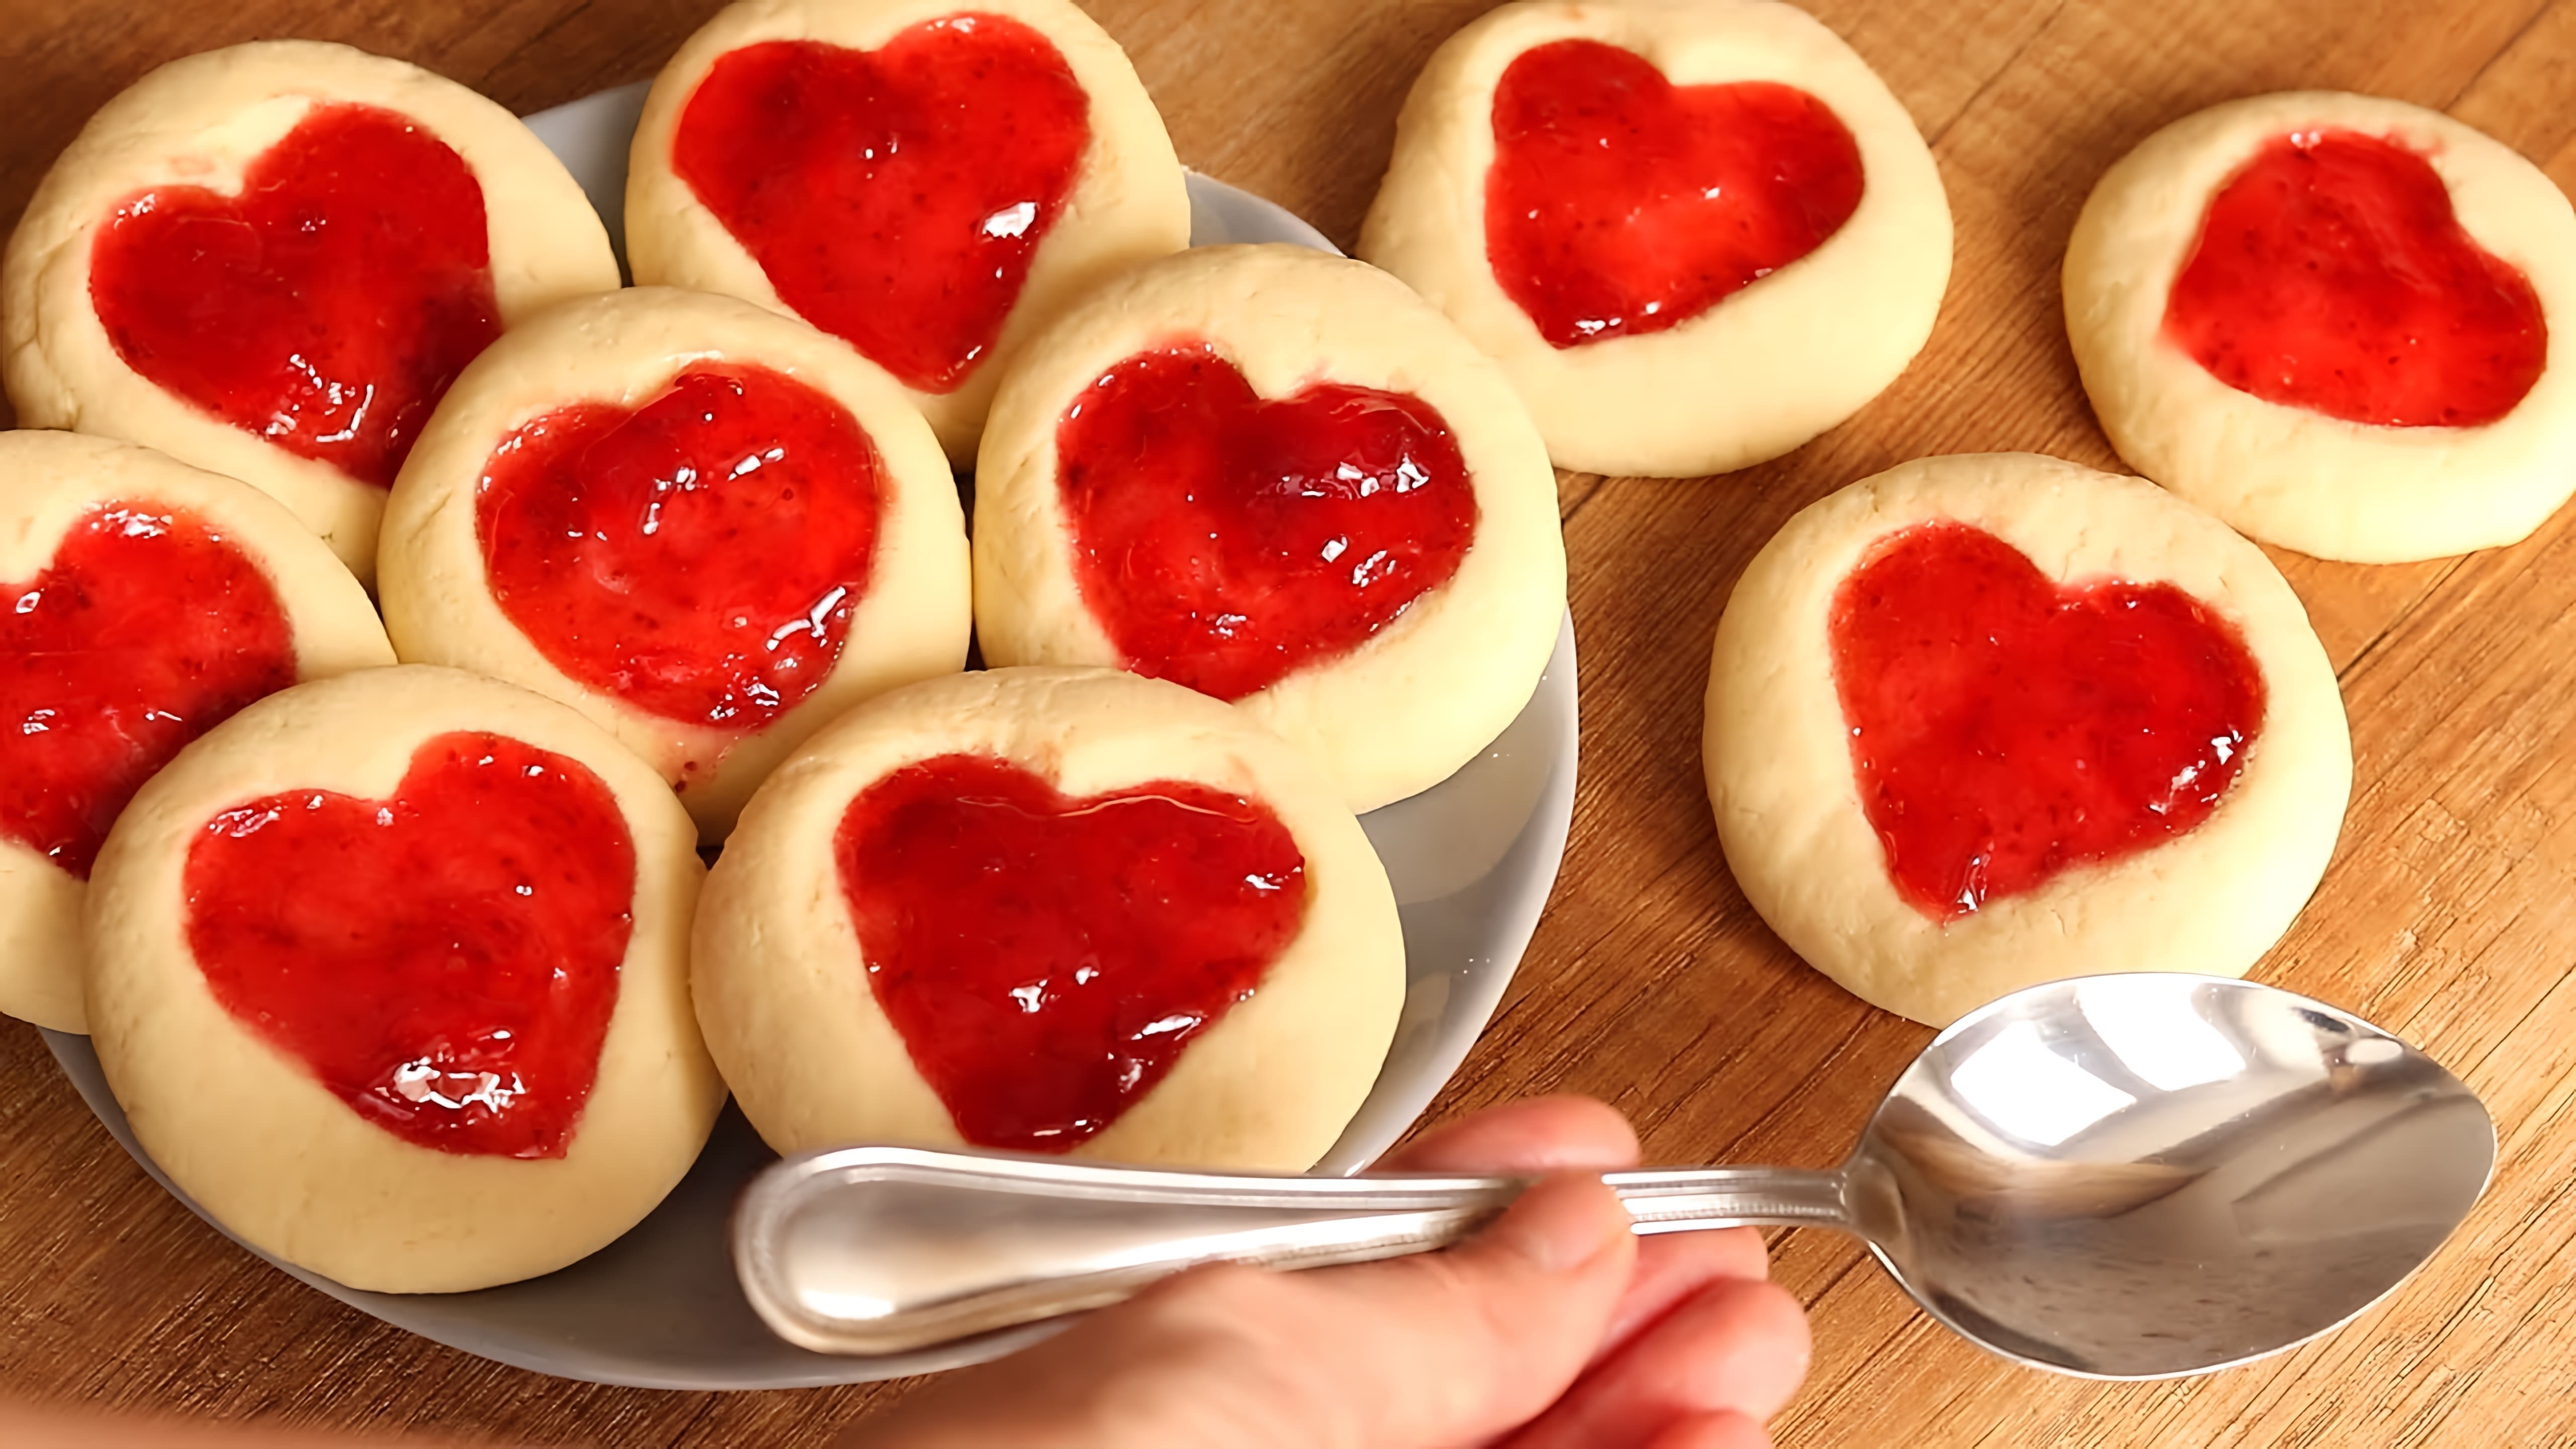 В этом видео демонстрируется рецепт приготовления праздничного печенья в форме сердечек